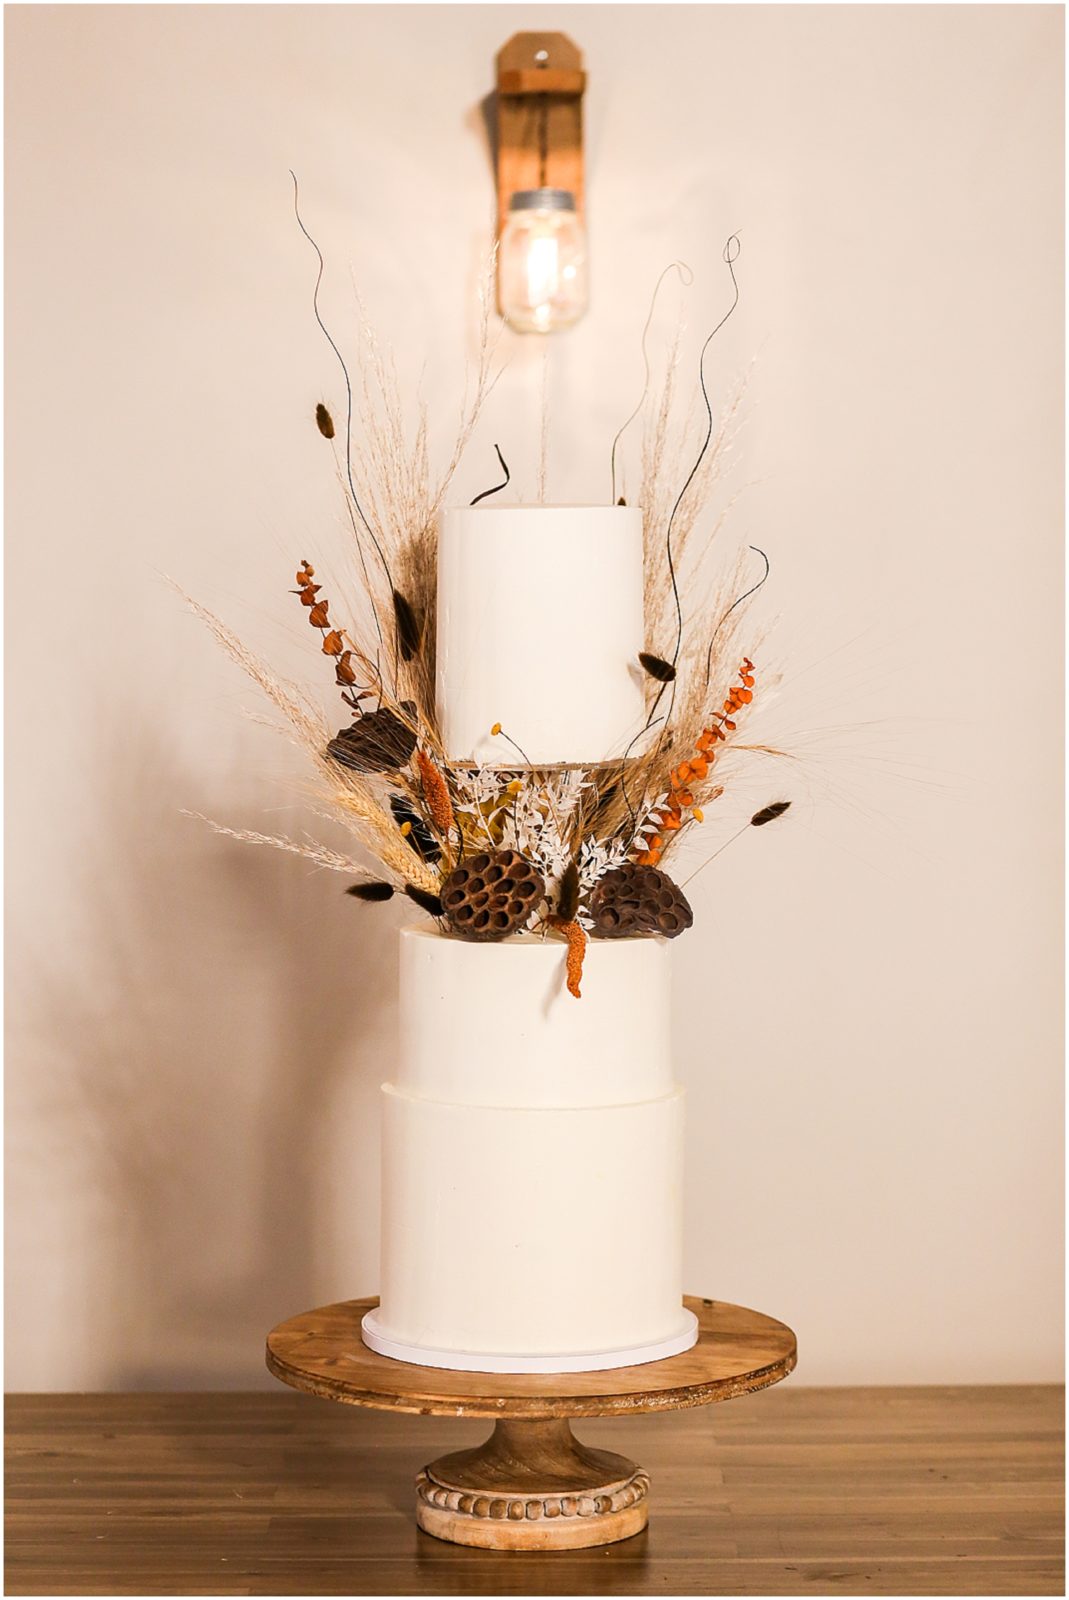 WHITE WEDDING CAKE - HIPSTER WEDDING CAKE - CLEAN WEDDING CAKE